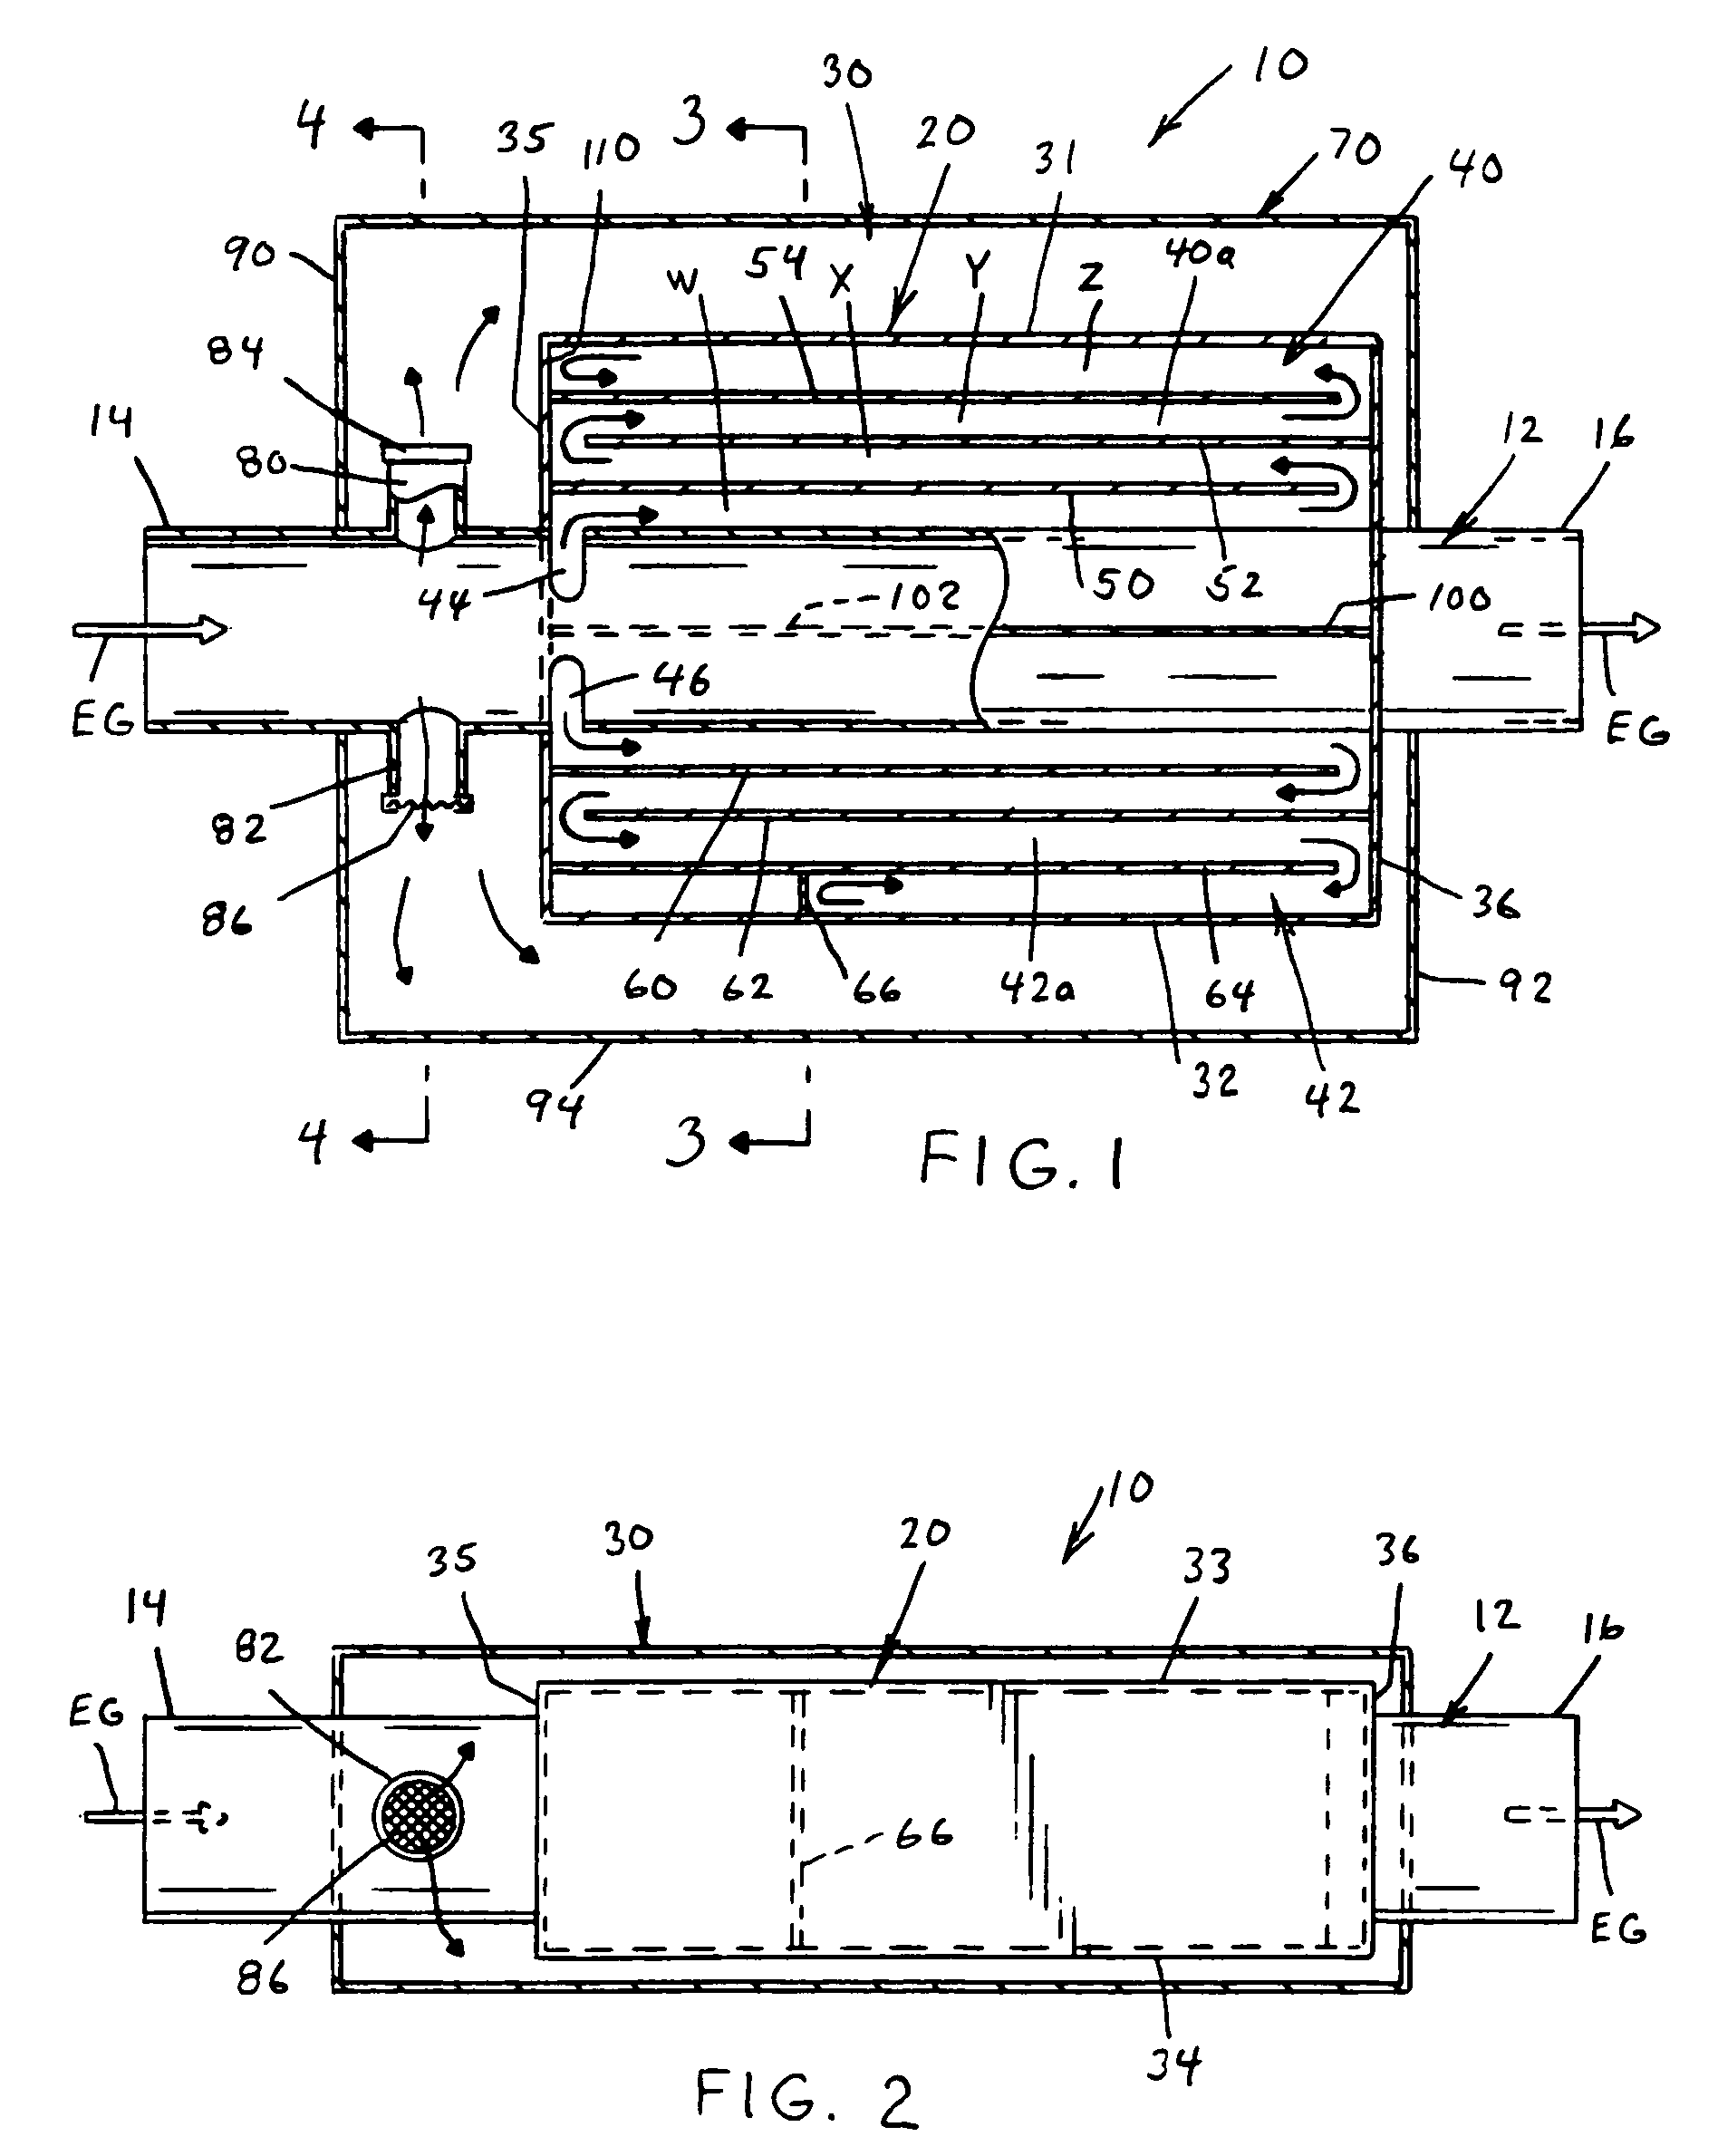 Exhaust muffler having a horizontally extending sound attenuation chamber